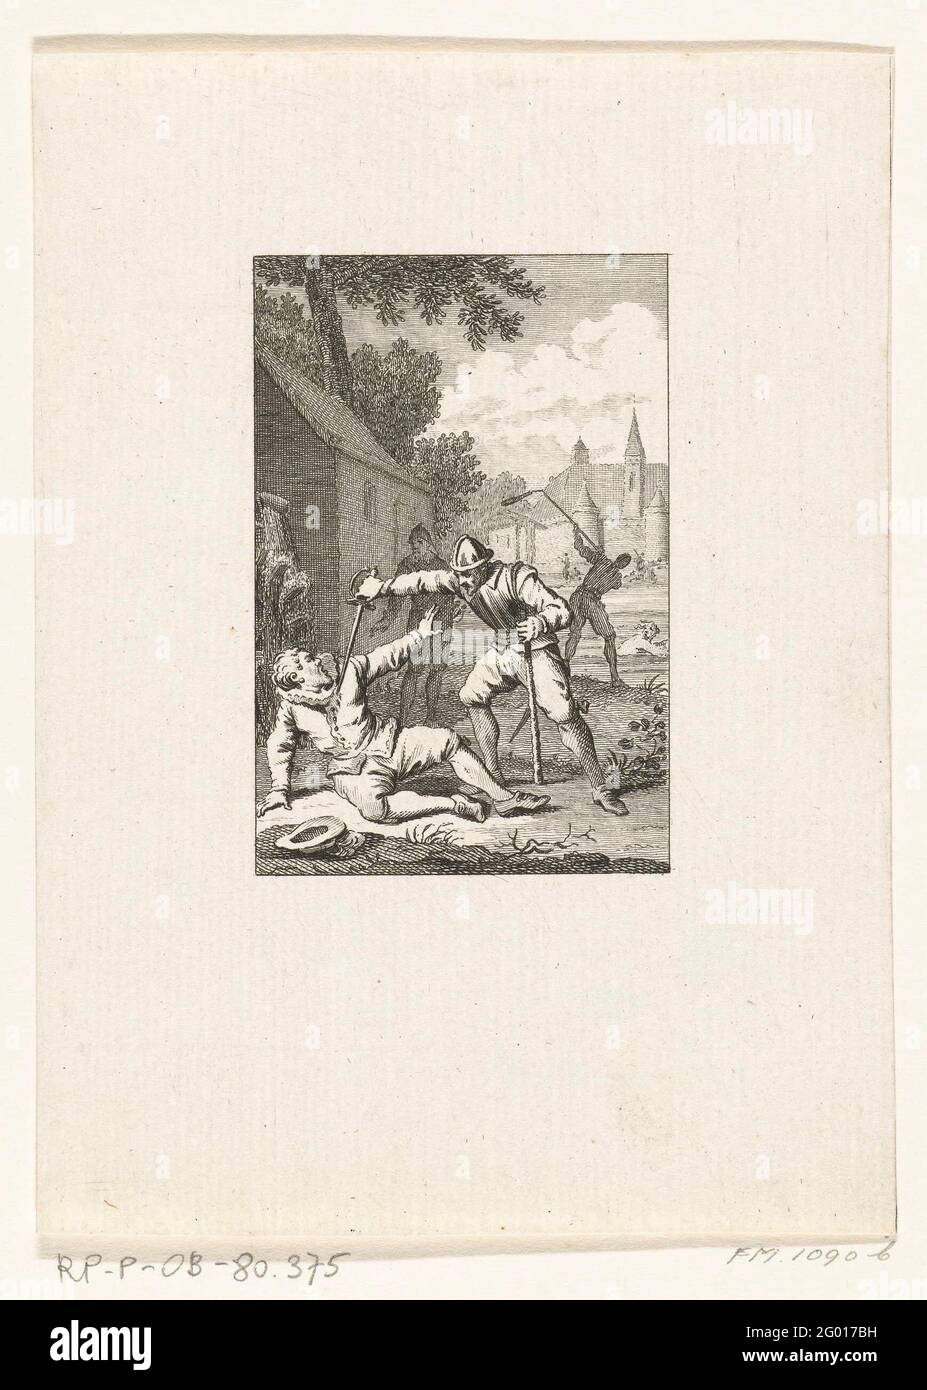 Mord an Wirich von Daun, Graf von Falkenstein, 1598. Der Mord an dem Wirich von Daun, Graf von Falkenstein, durch die spanischen Truppen unter Francisco de Mendoza am 11. Oktober 1598. Stockfoto